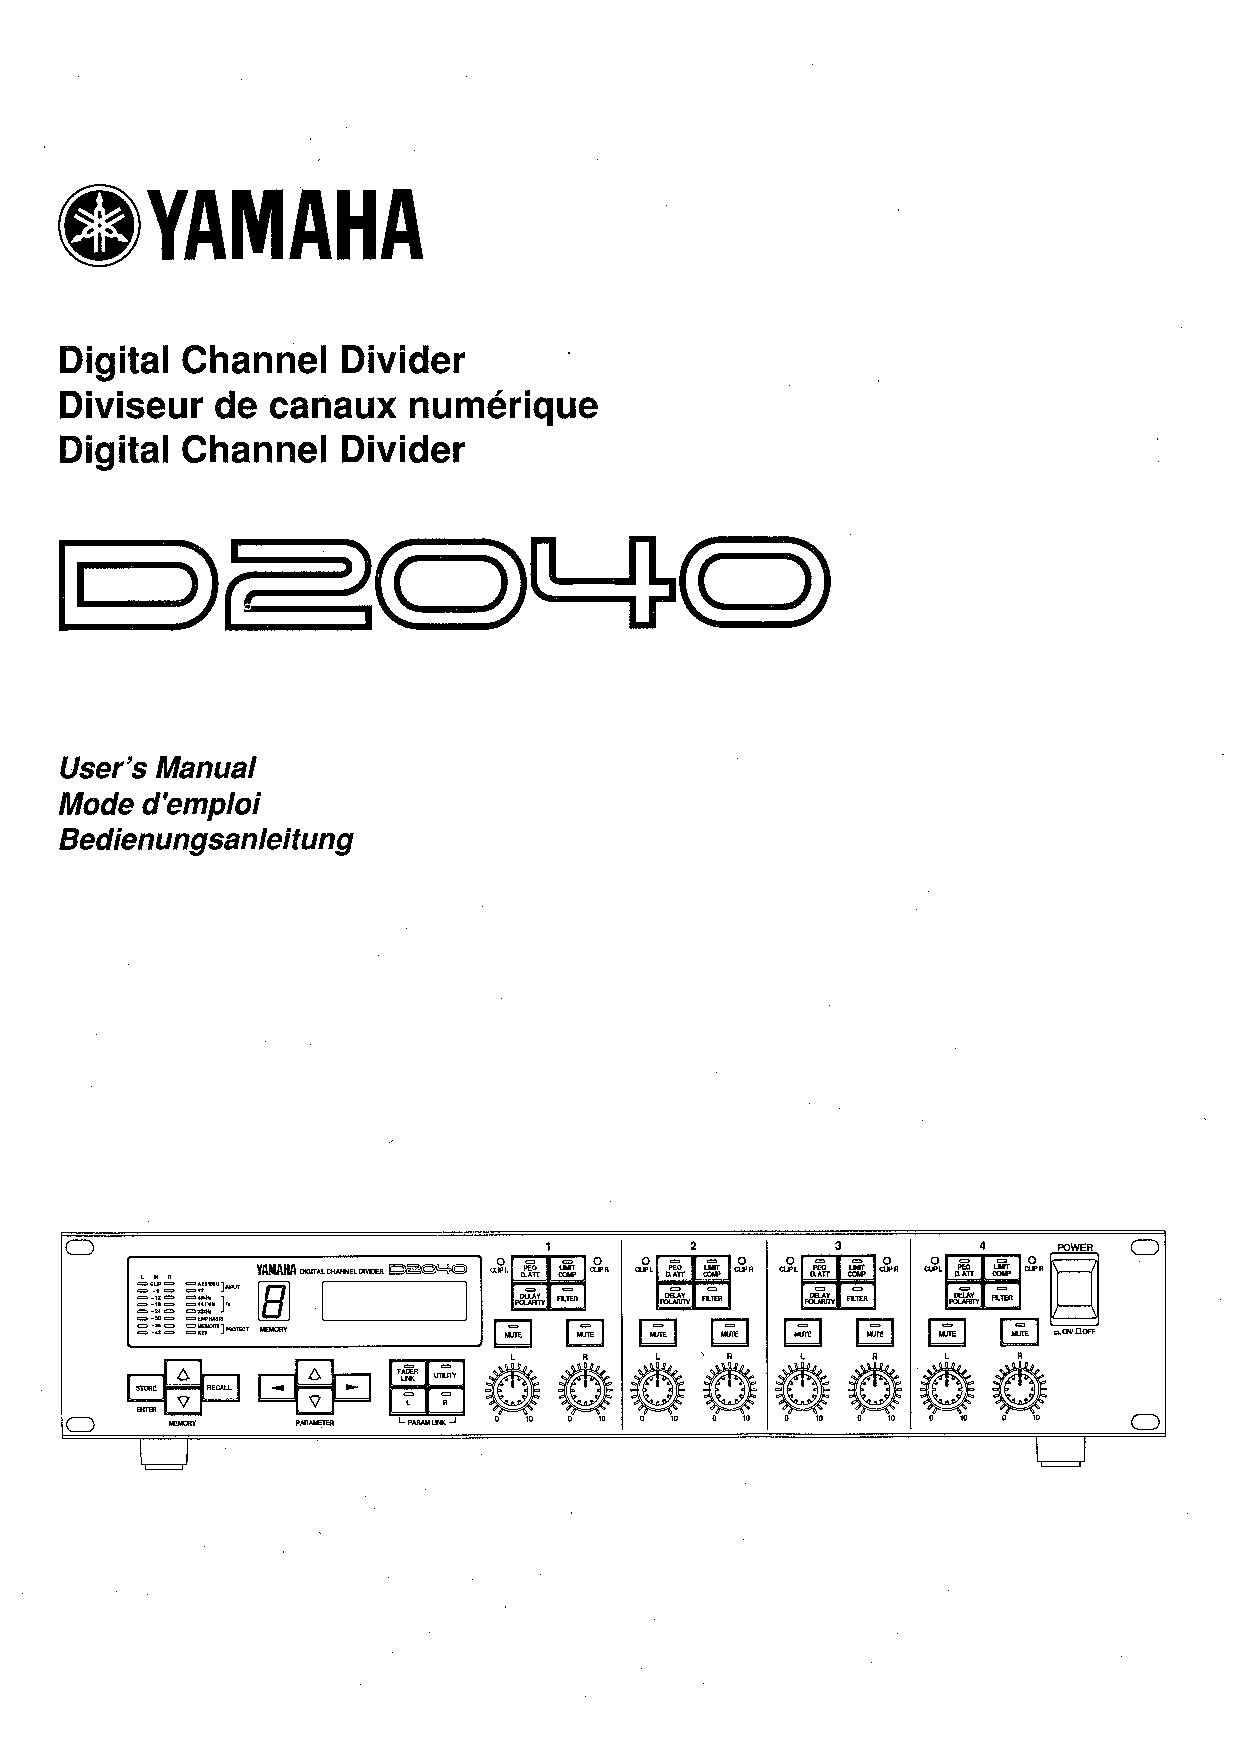 Yamaha D2040 User Manual